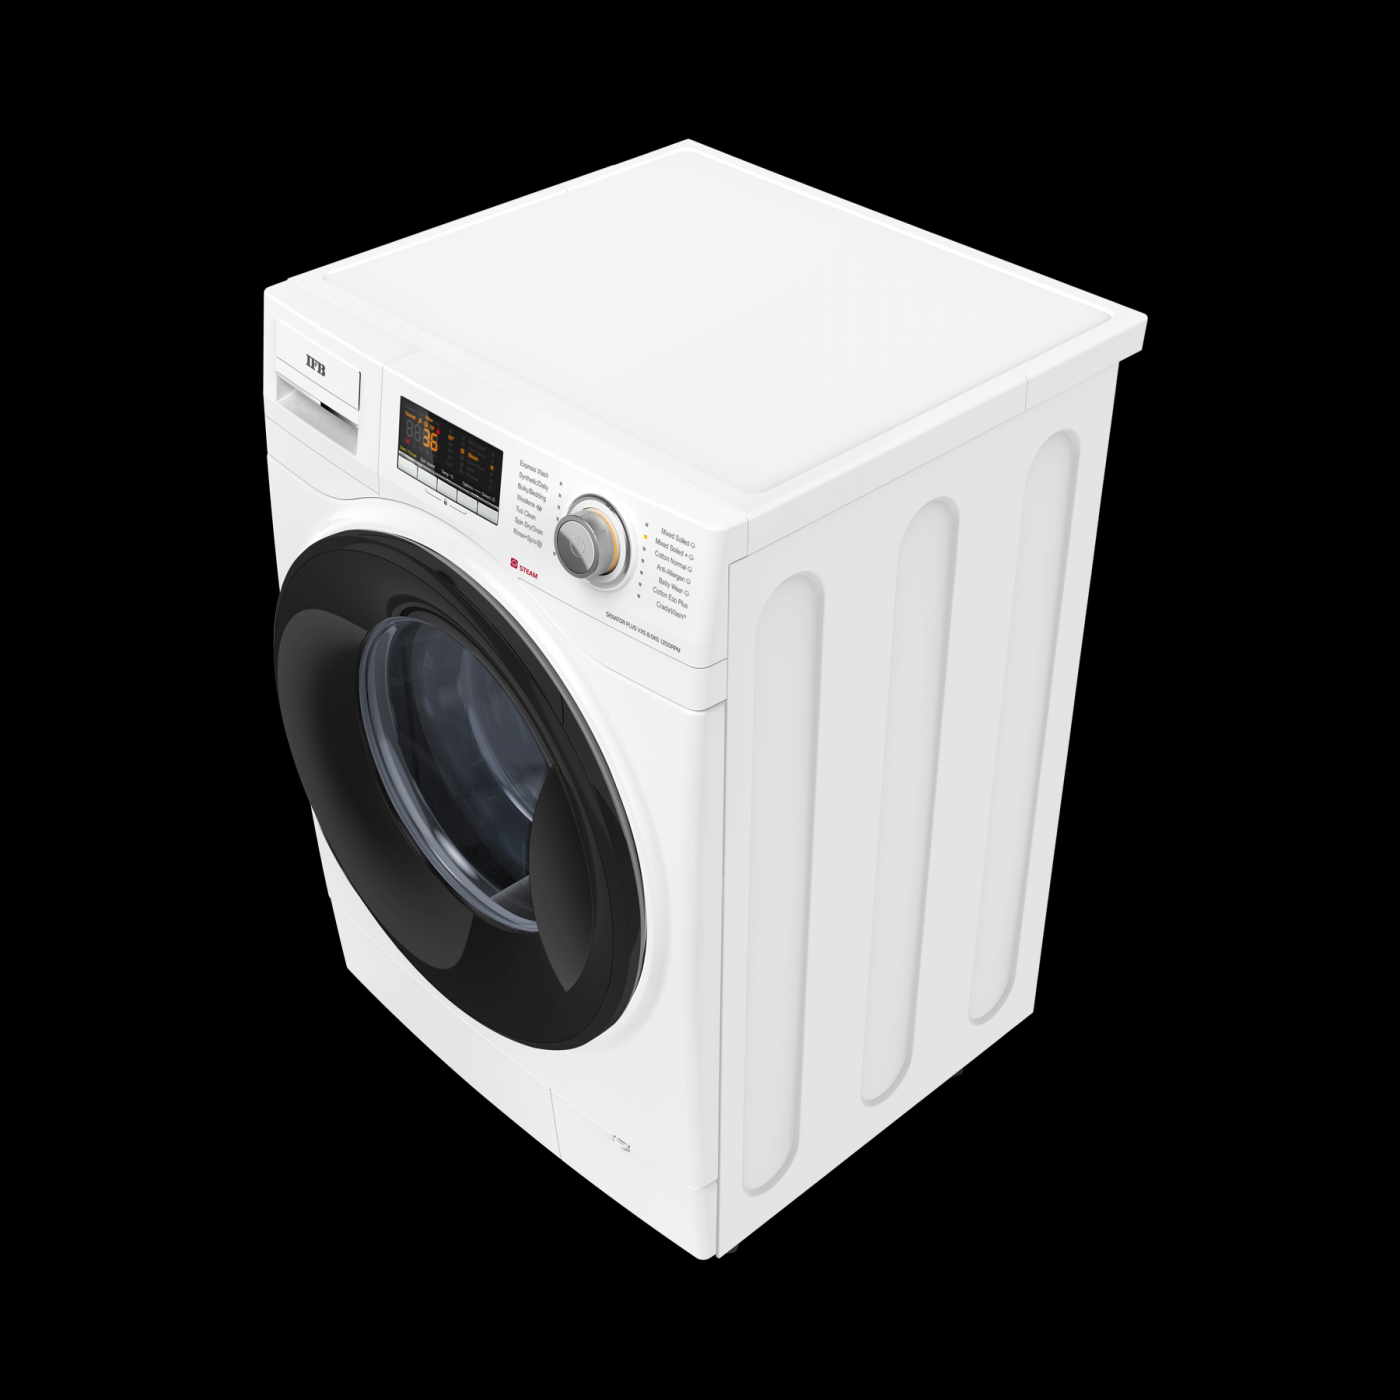 IFB Senator Plus VXS 8012 8 Kg Fully-Automatic Front Loading Washing Machine - Mahajan Electronics Online